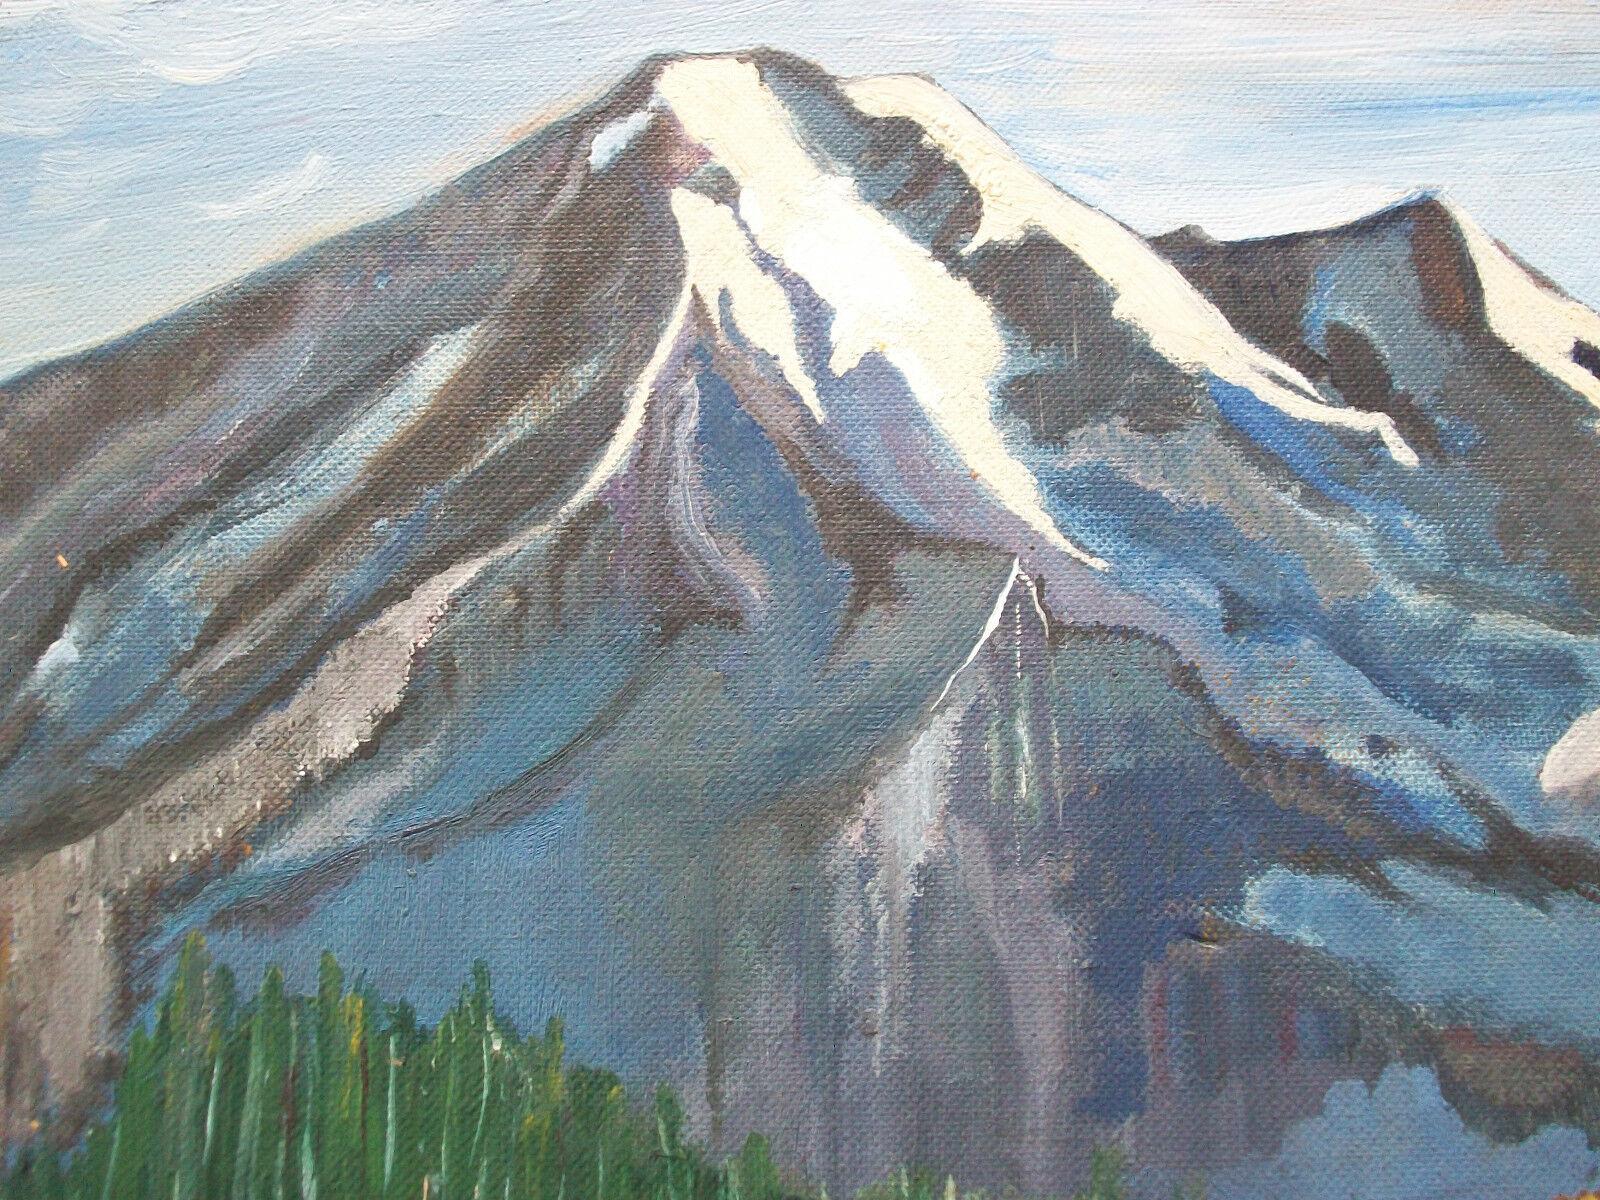 Peinture à l'huile d'art populaire du milieu du siècle représentant un paysage de montagne sur toile d'artiste - non encadrée - paraphée en bas à droite - Canada - vers 1956.

Bon état vintage - pas de perte - pas de restauration apparente - légères